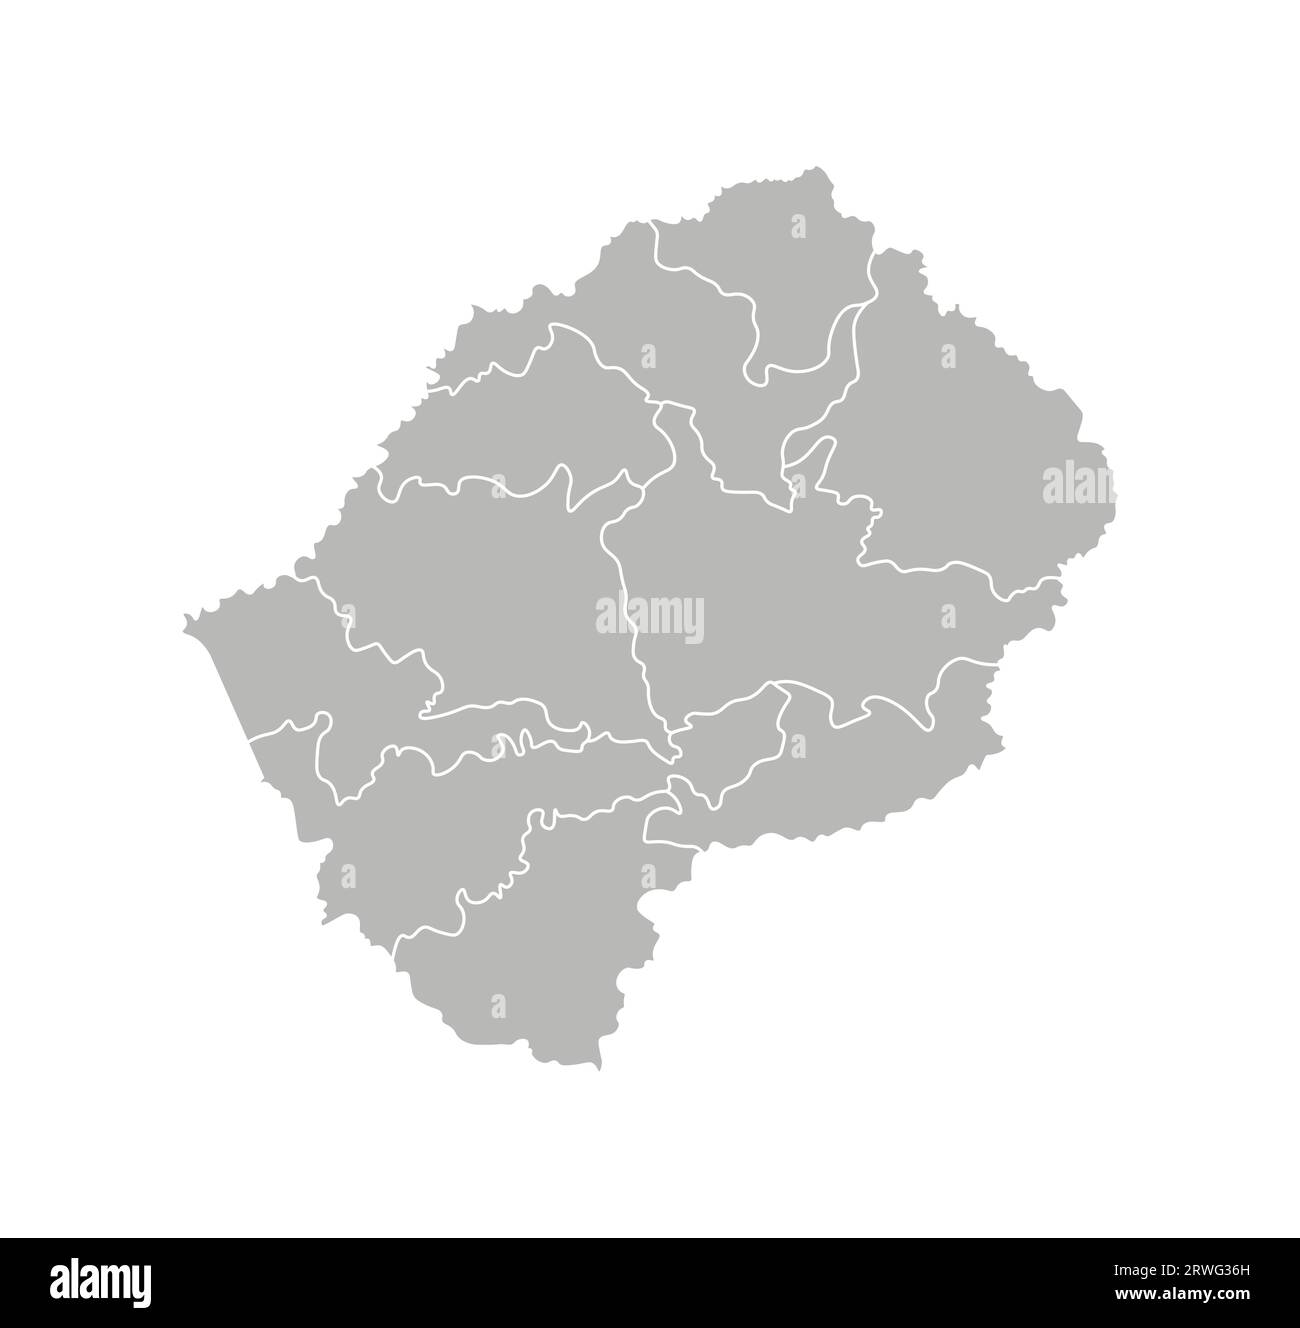 Illustrazione vettoriale isolata della mappa amministrativa semplificata del Lesotho. Confini dei distretti (regioni). Silhouette grigie. Contorno bianco. Illustrazione Vettoriale